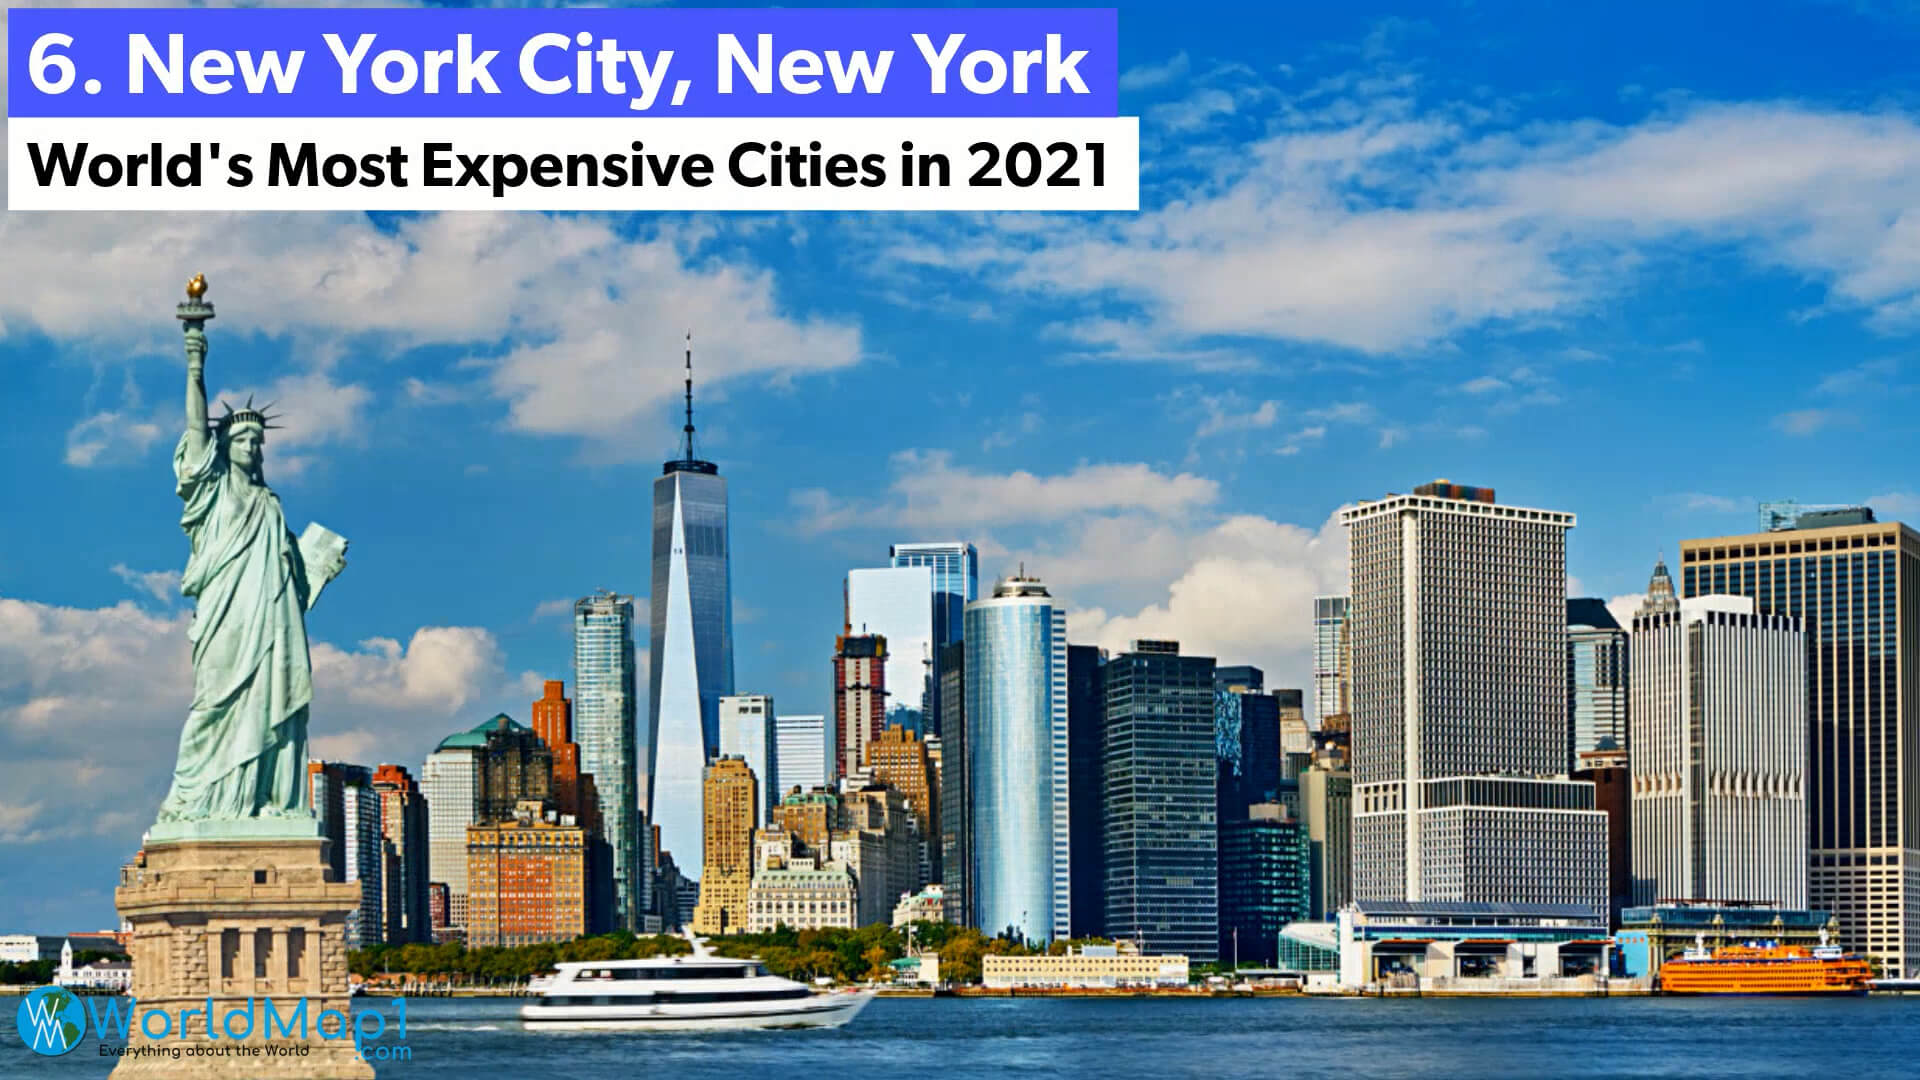 Les villes les plus chères du monde - New York City, New York - US